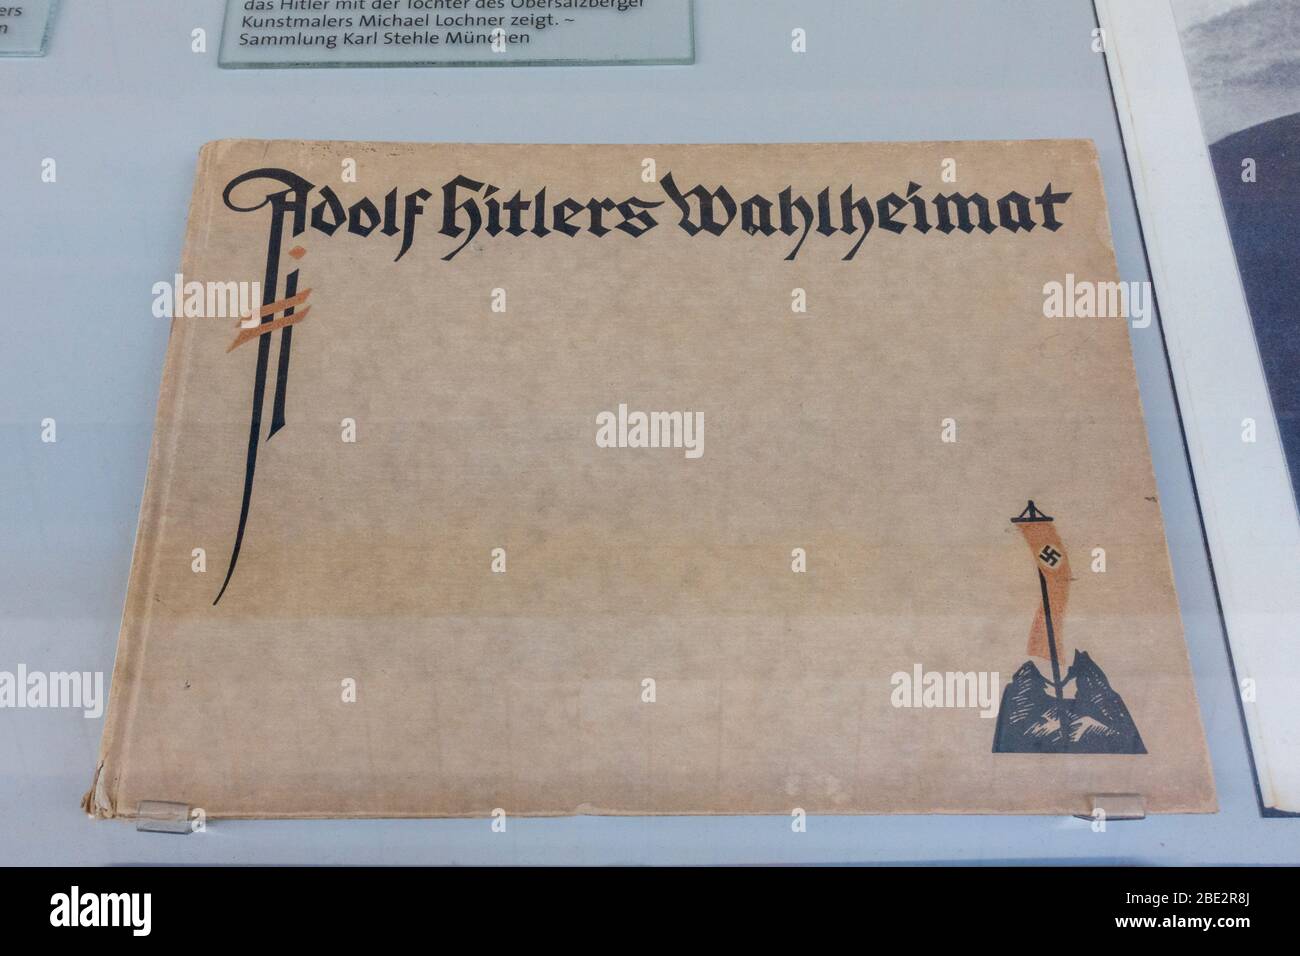 Copertina del libro "Adolf Hitlers Wahlheimat", (Adolf Hitlers adottò Home), Centro di documentazione Obersalzburg, Obersalzburg, Baviera, Germania. Foto Stock